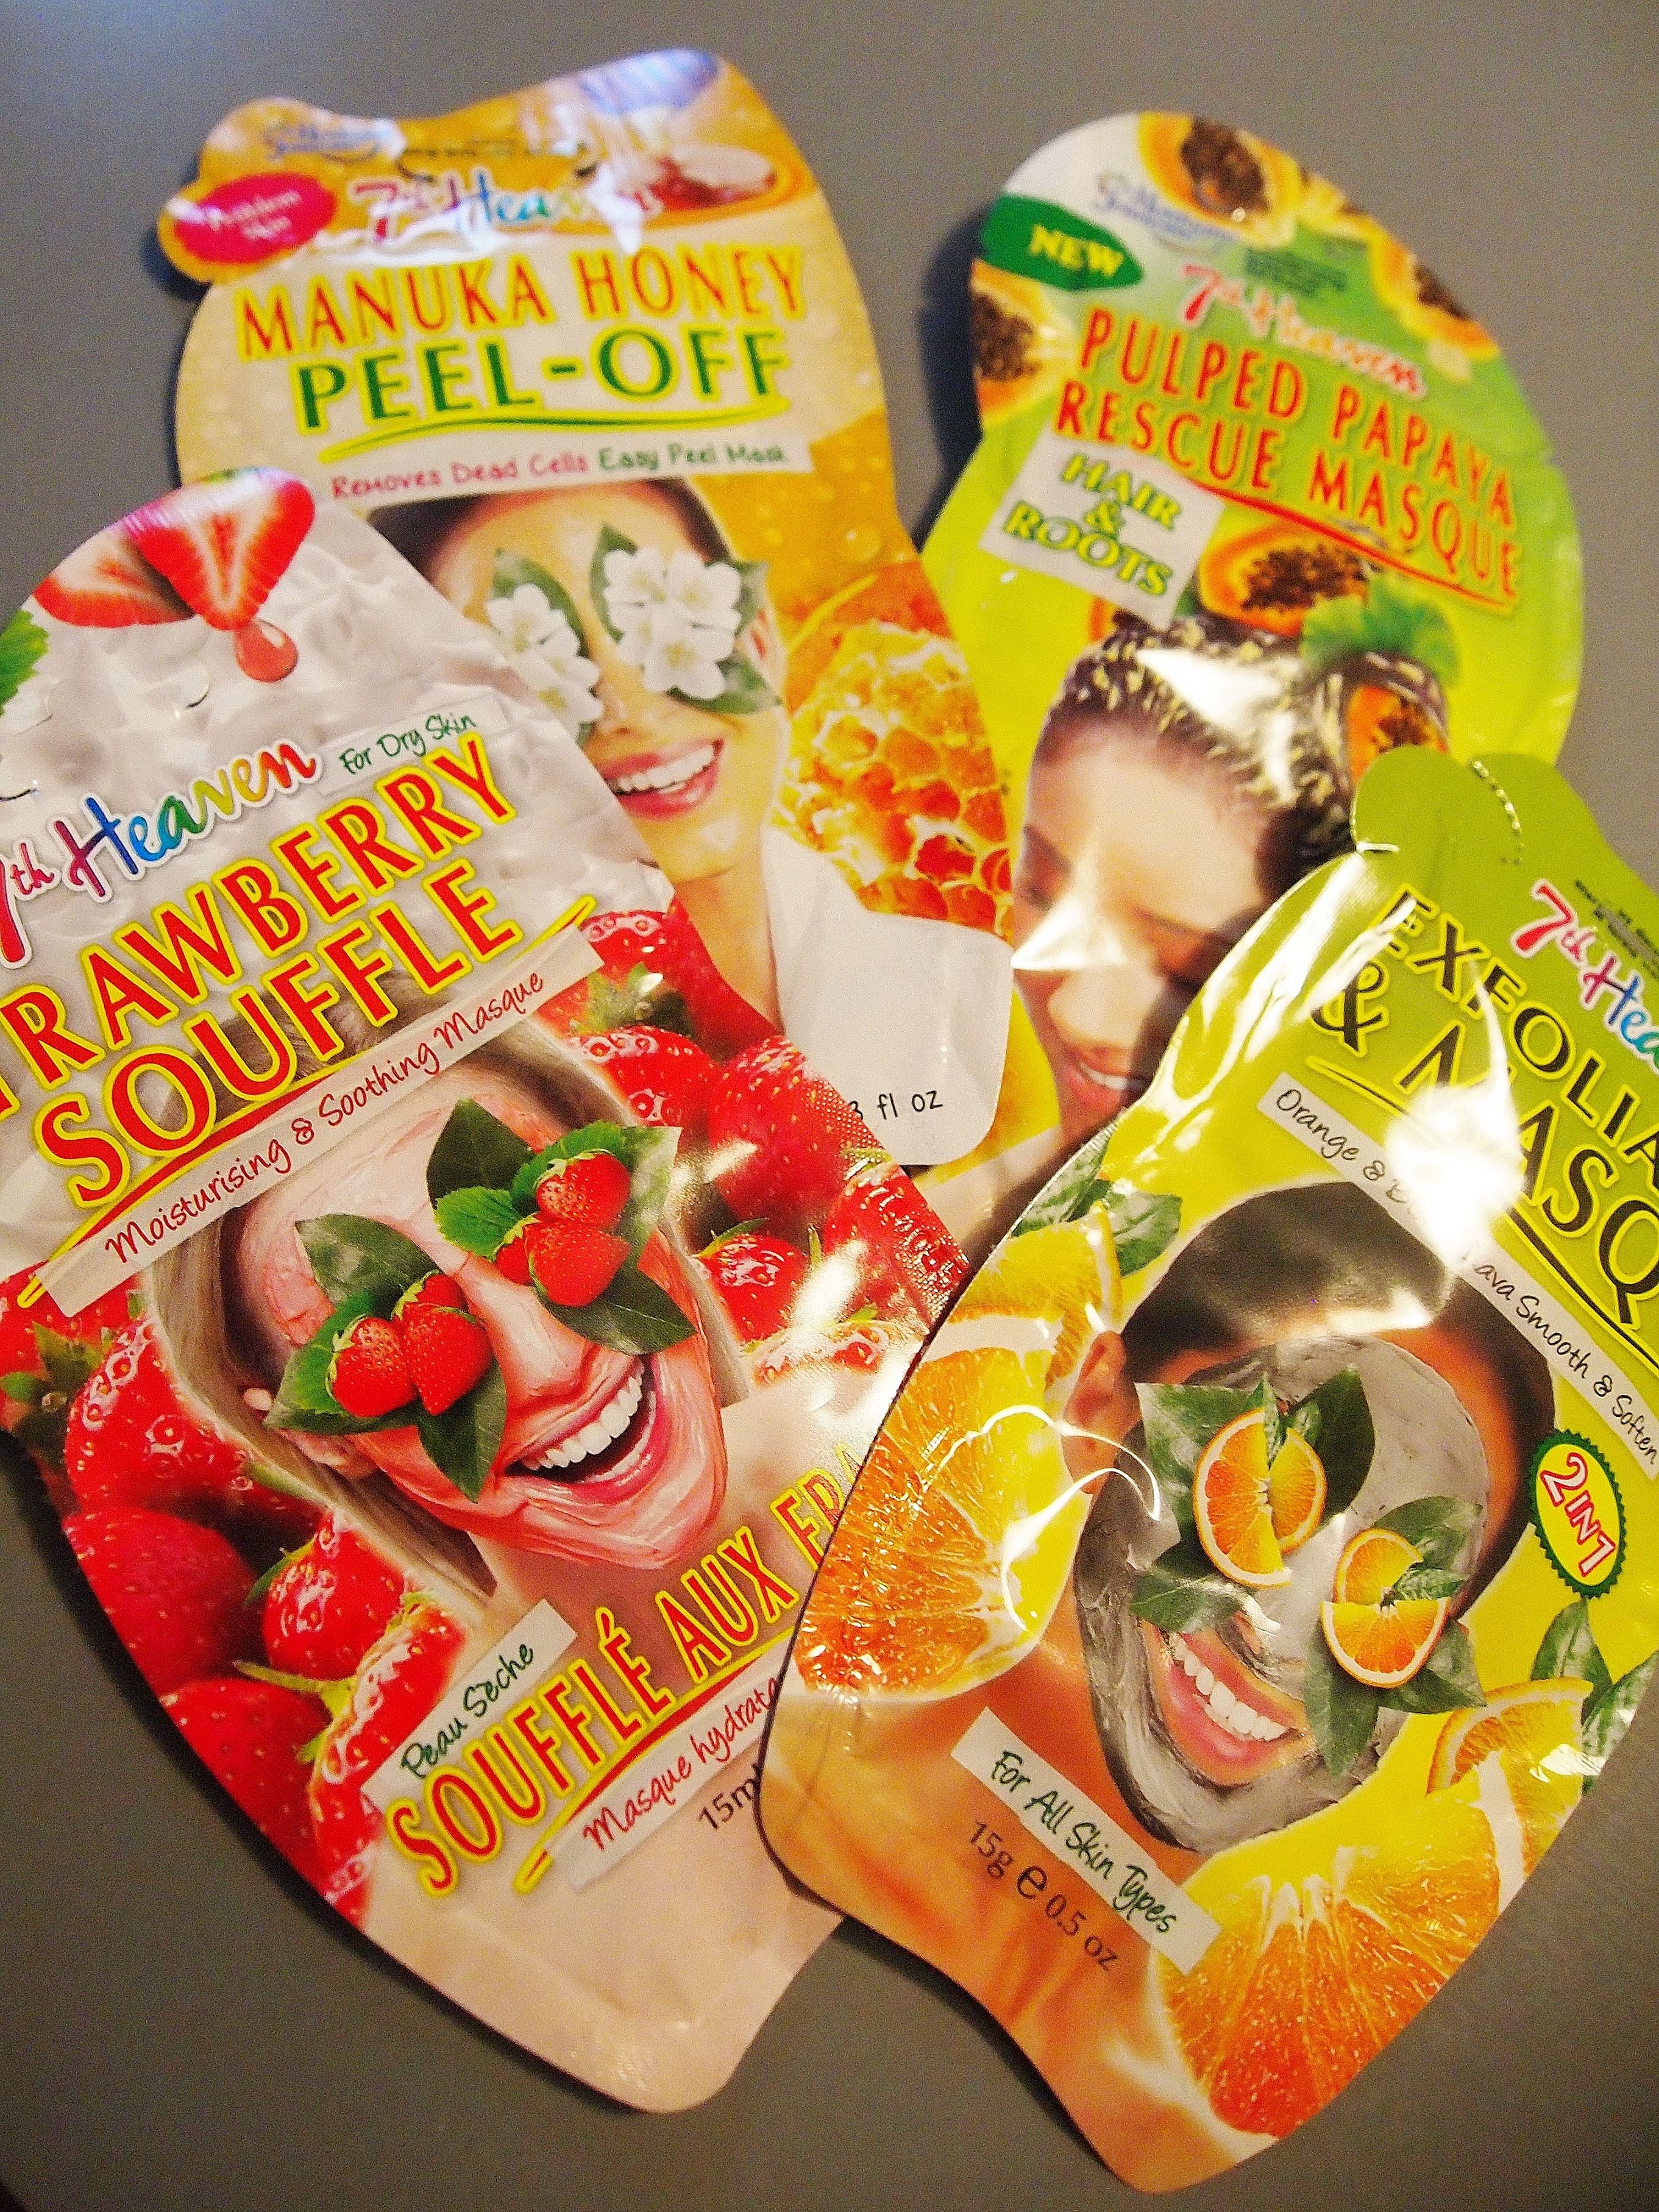 7th Heaven masks Orange & Black Lava Exfoliator mask, Manuka Honey Peel-Off Mask, Strawberry Souffle mask, Pulped Papaya Rescue Hair Mask